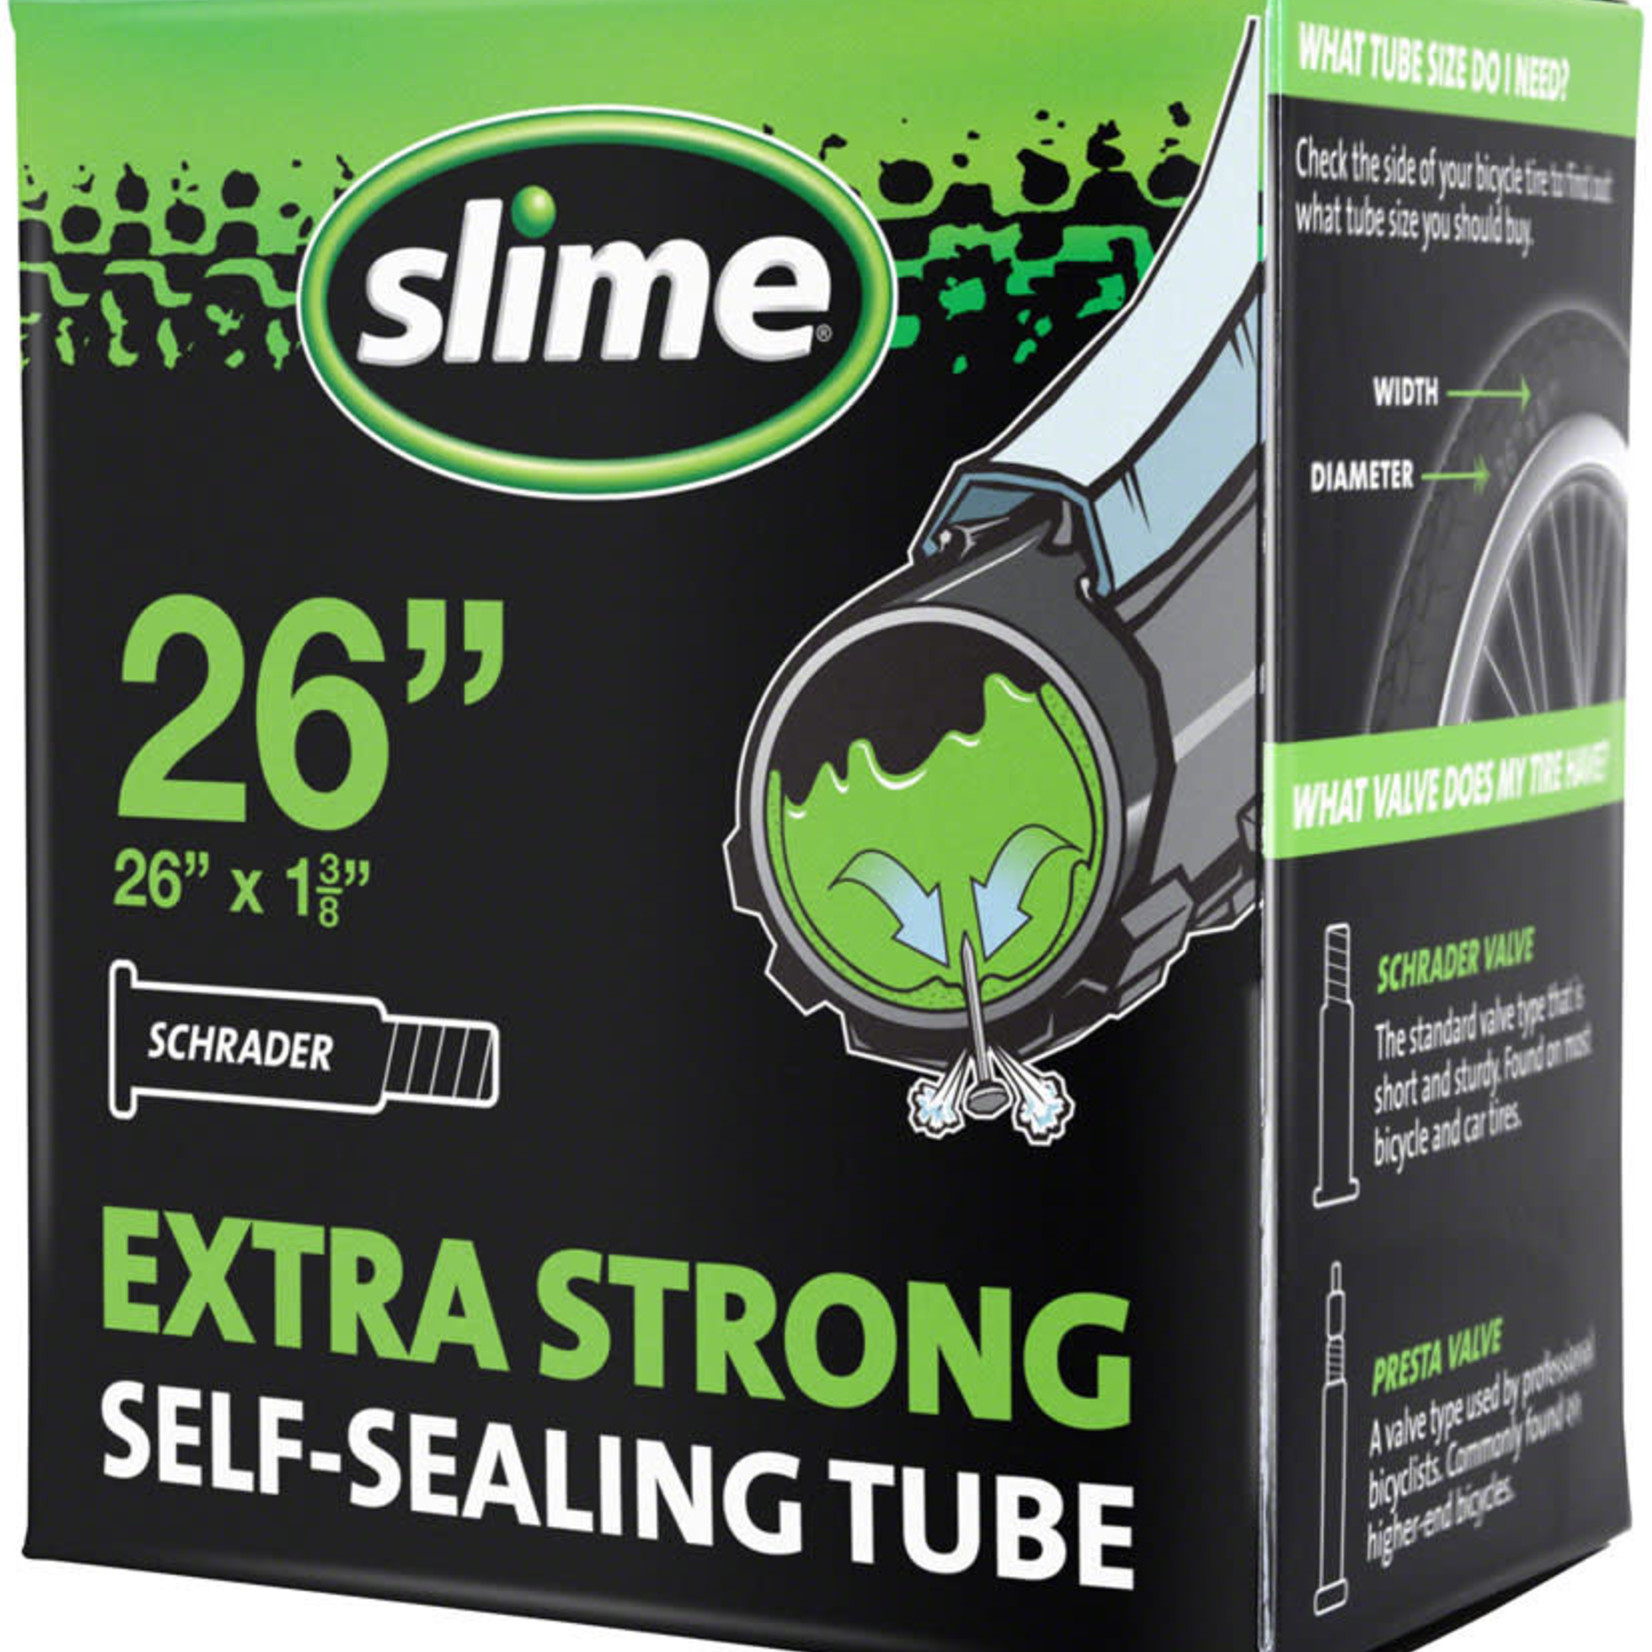 SLIME Slime Self-Sealing Tube 26"x 1-3/8" , Schrader Valve